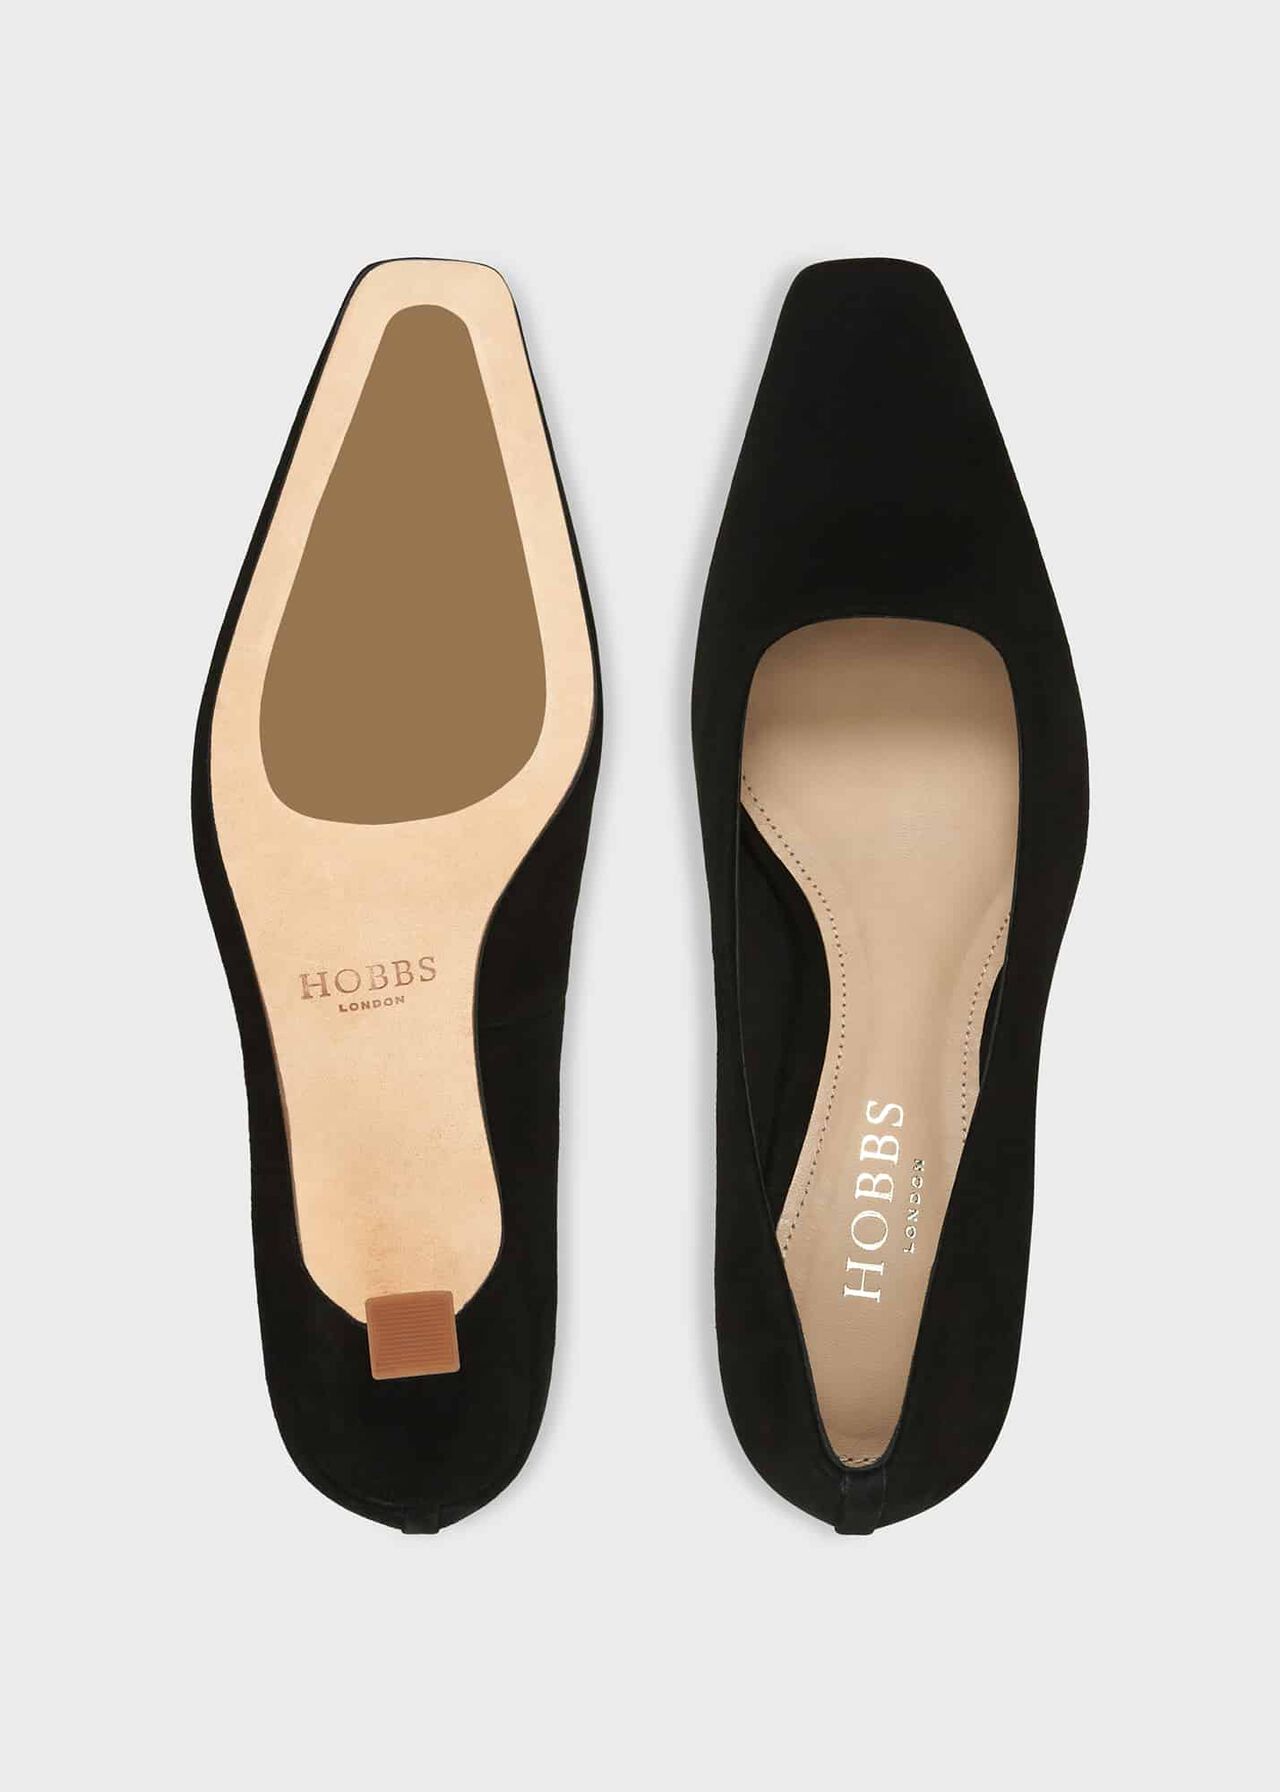 Dita Court Shoes, Black, hi-res